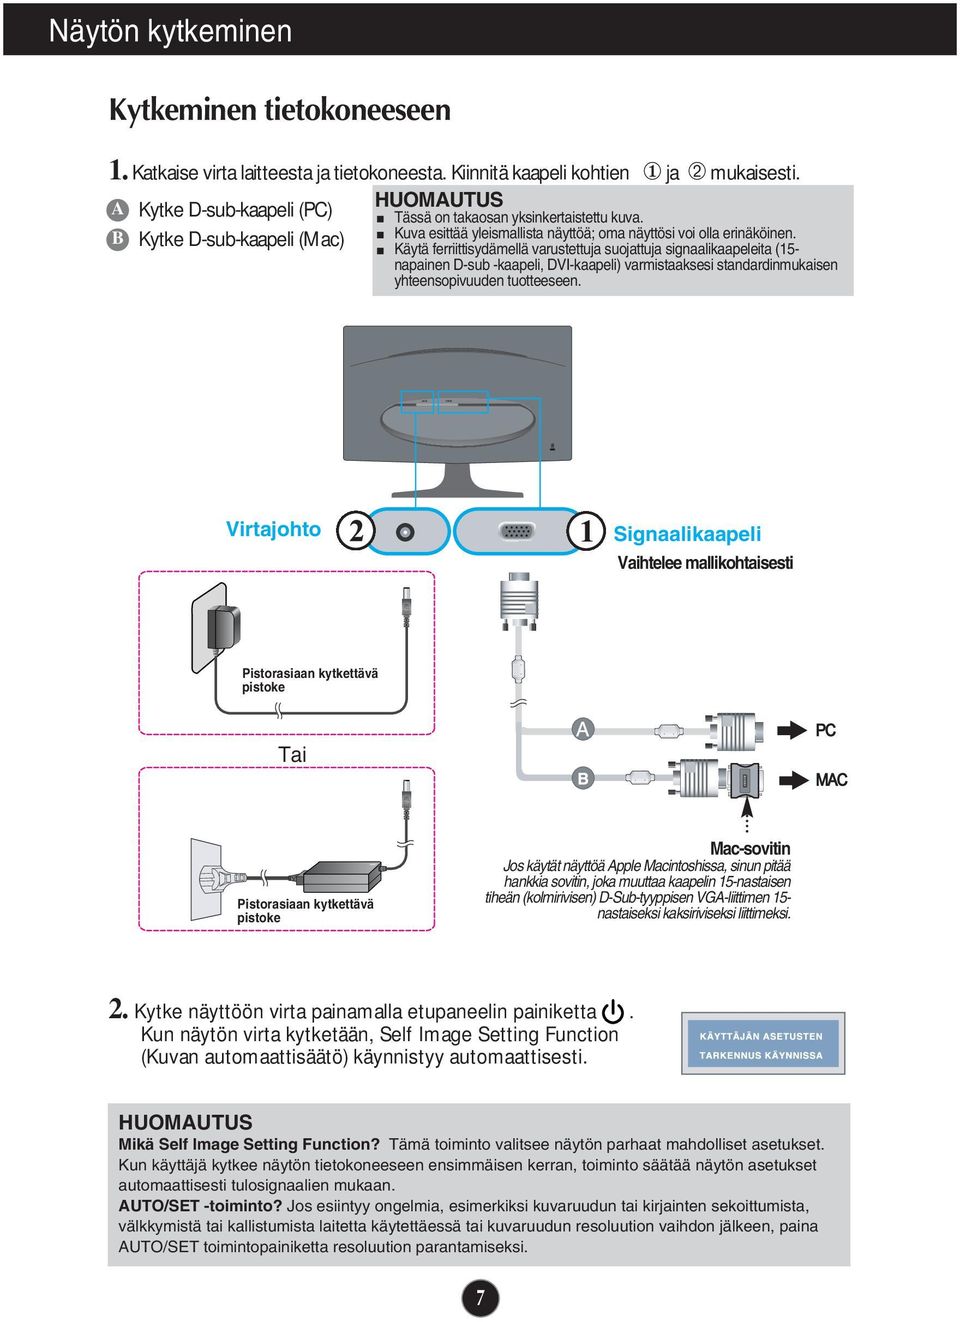 Käytä ferriittisydämellä varustettuja suojattuja signaalikaapeleita (15- napainen D-sub -kaapeli, DVI-kaapeli) varmistaaksesi standardinmukaisen yhteensopivuuden tuotteeseen.